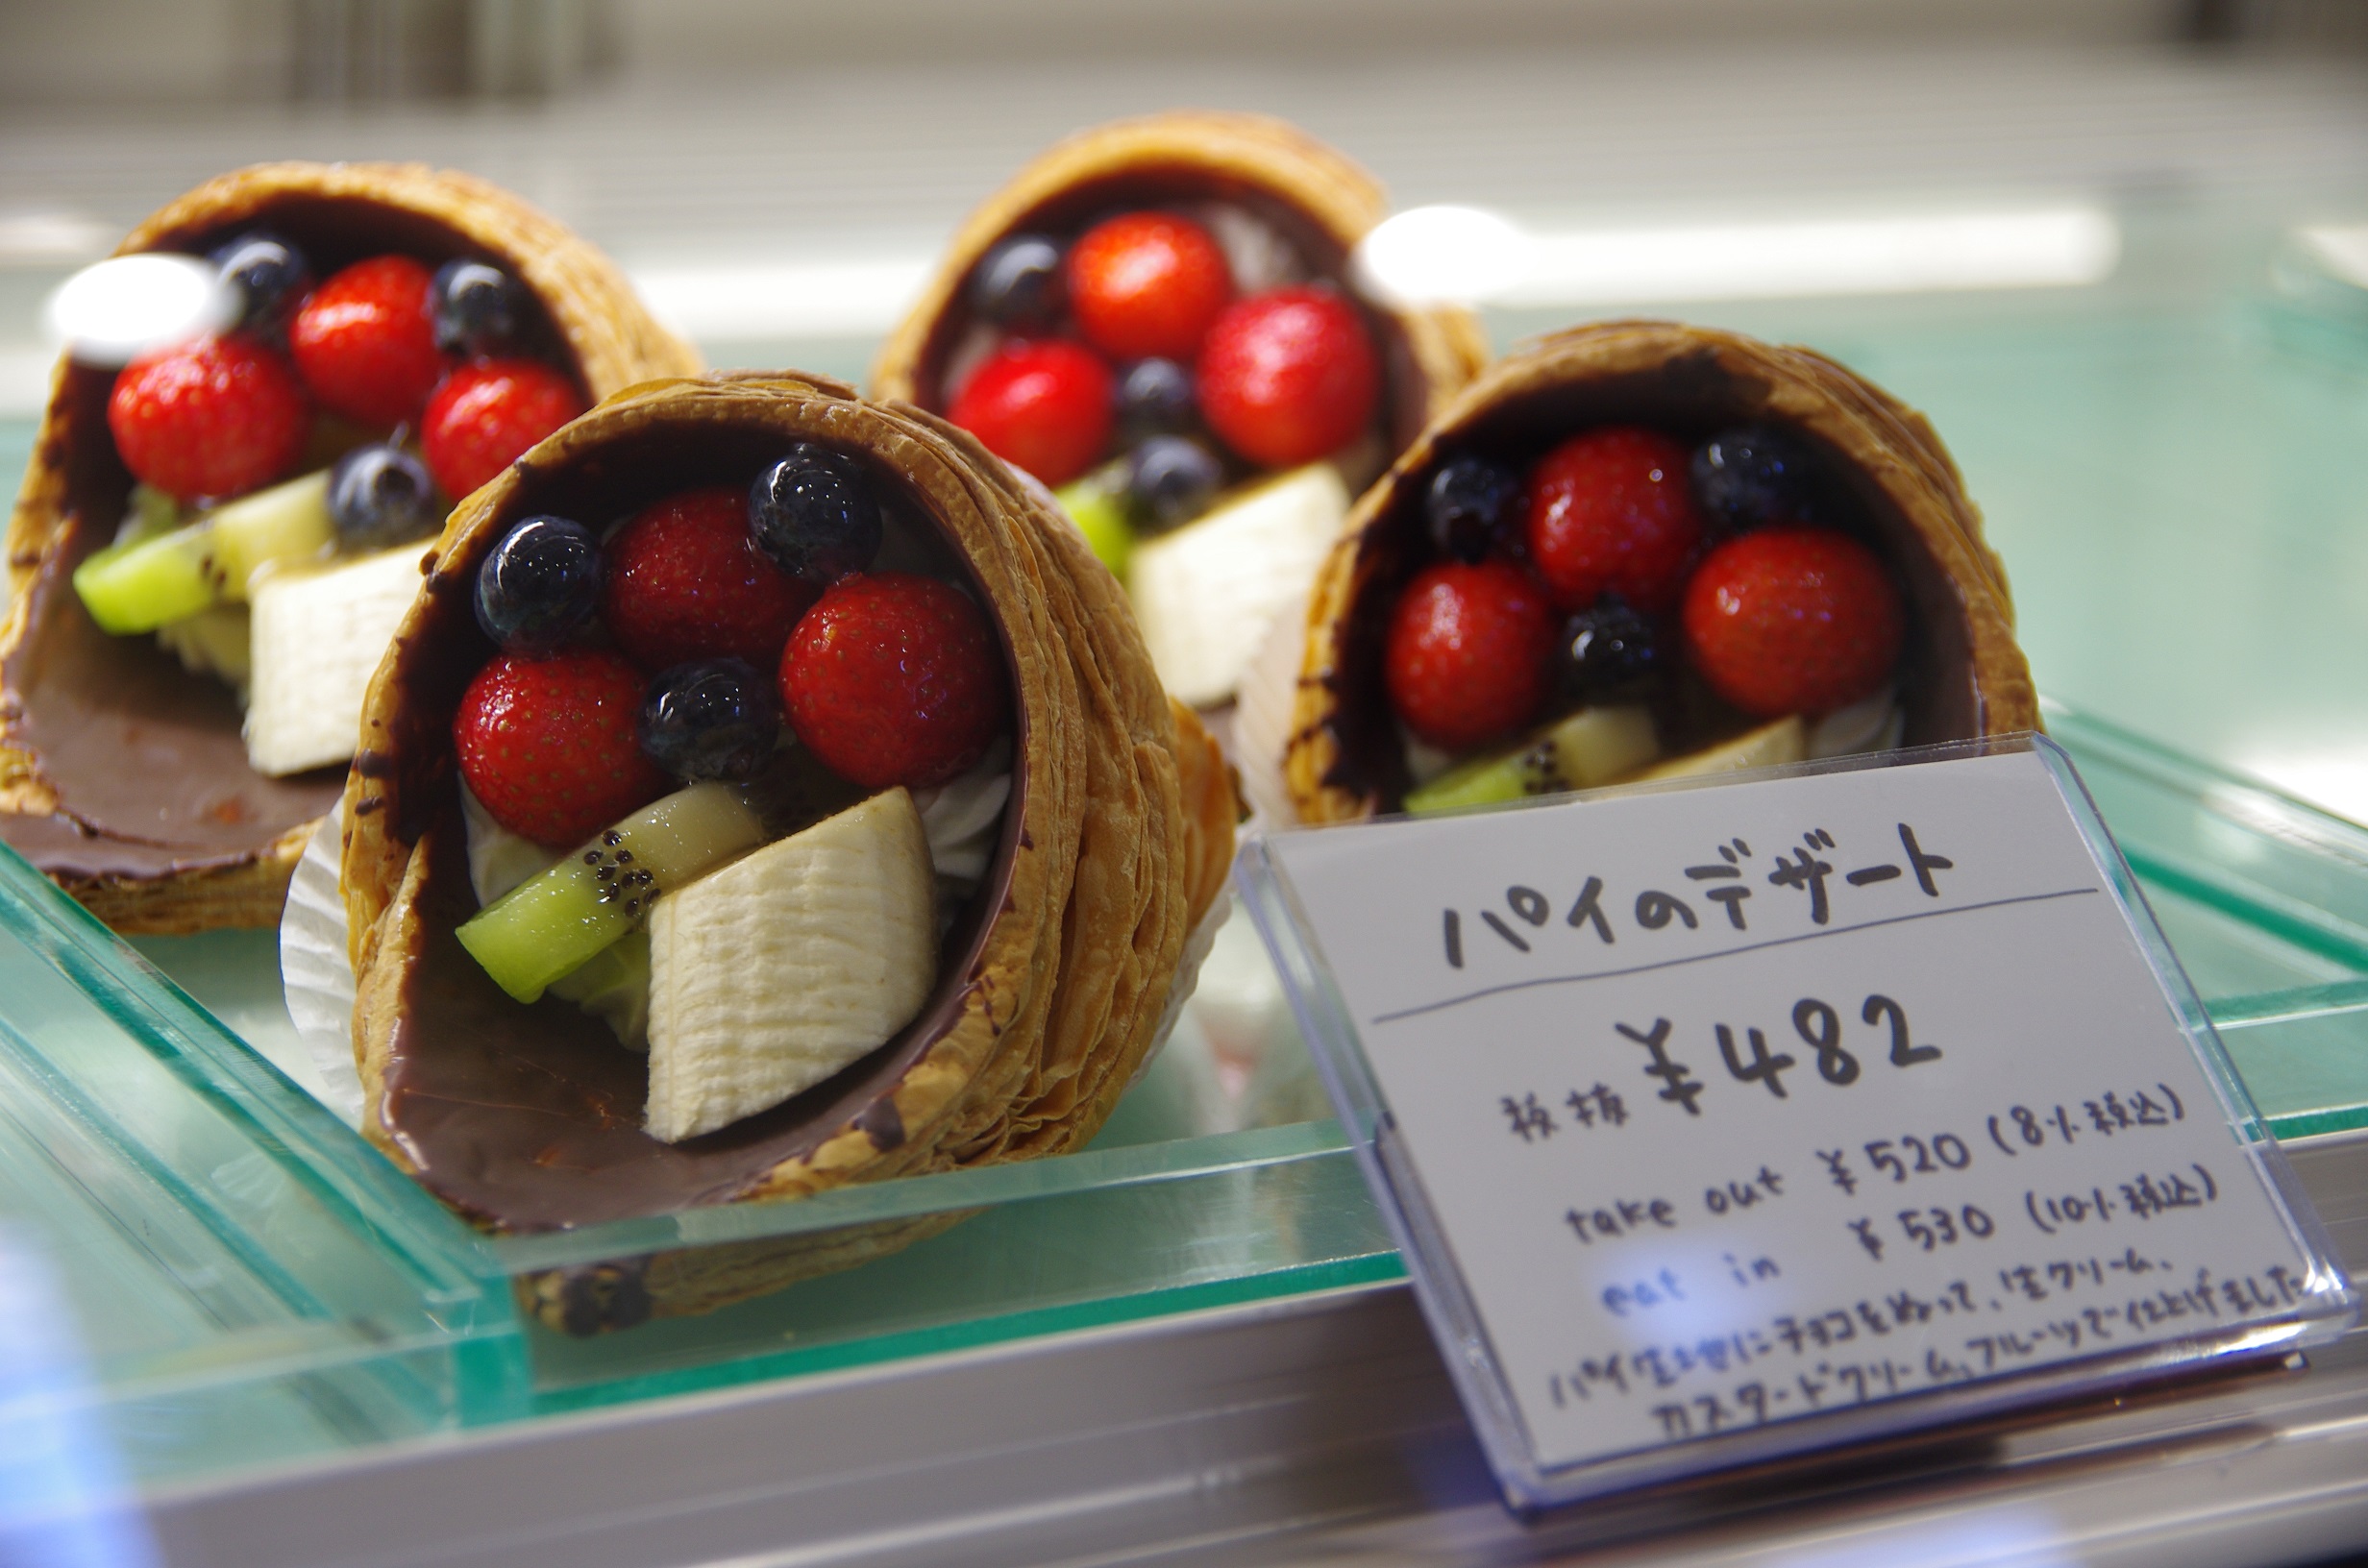 十和田で愛され続けて60年以上 老舗菓子店 Patisserie Misawa 青森の魅力